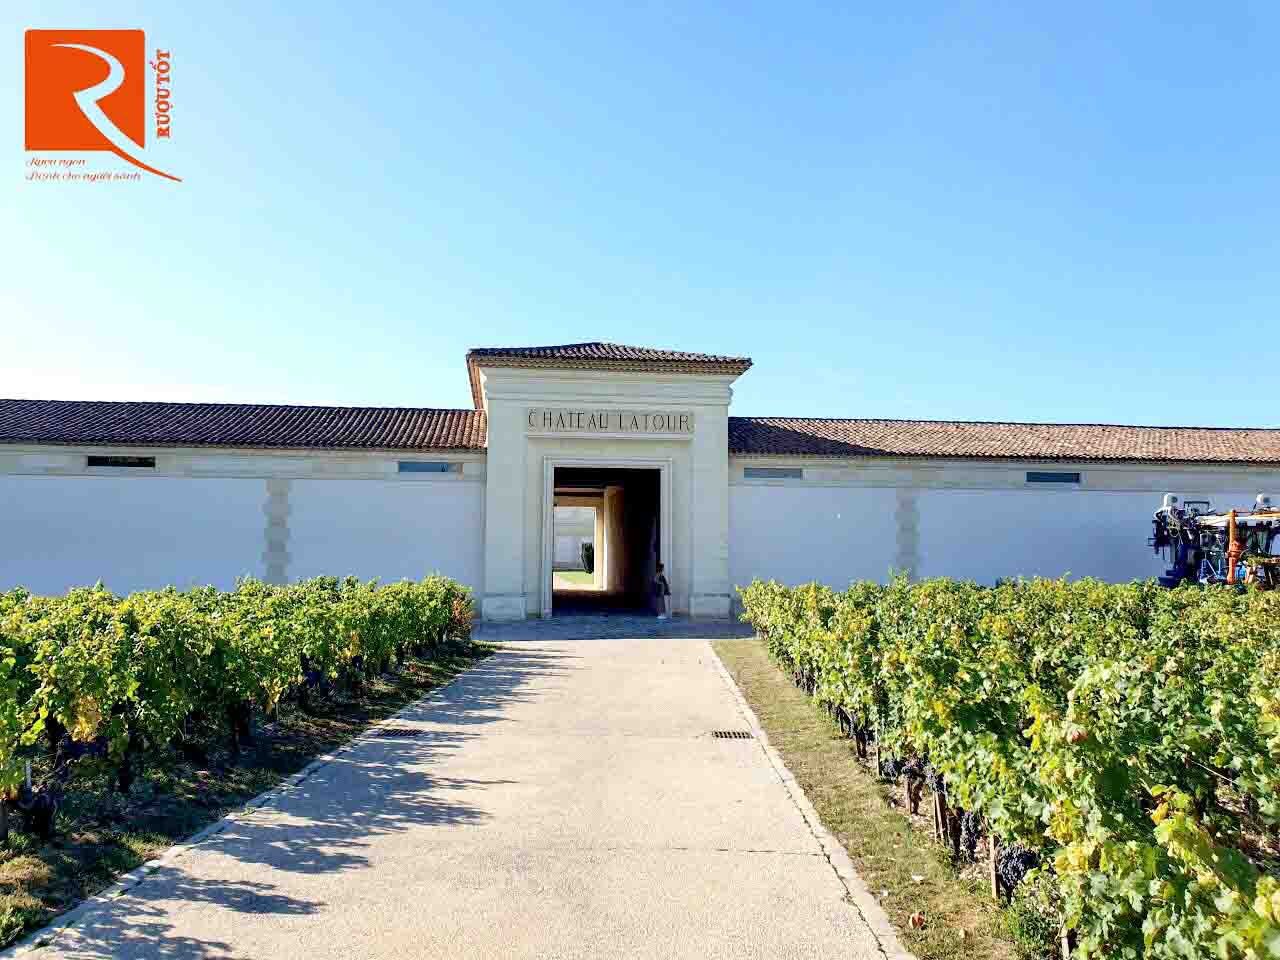 Thăm quan nhà làm rượu vang Chateau Latour - Vườn trồng nho rộng lớn nhất ở đây!